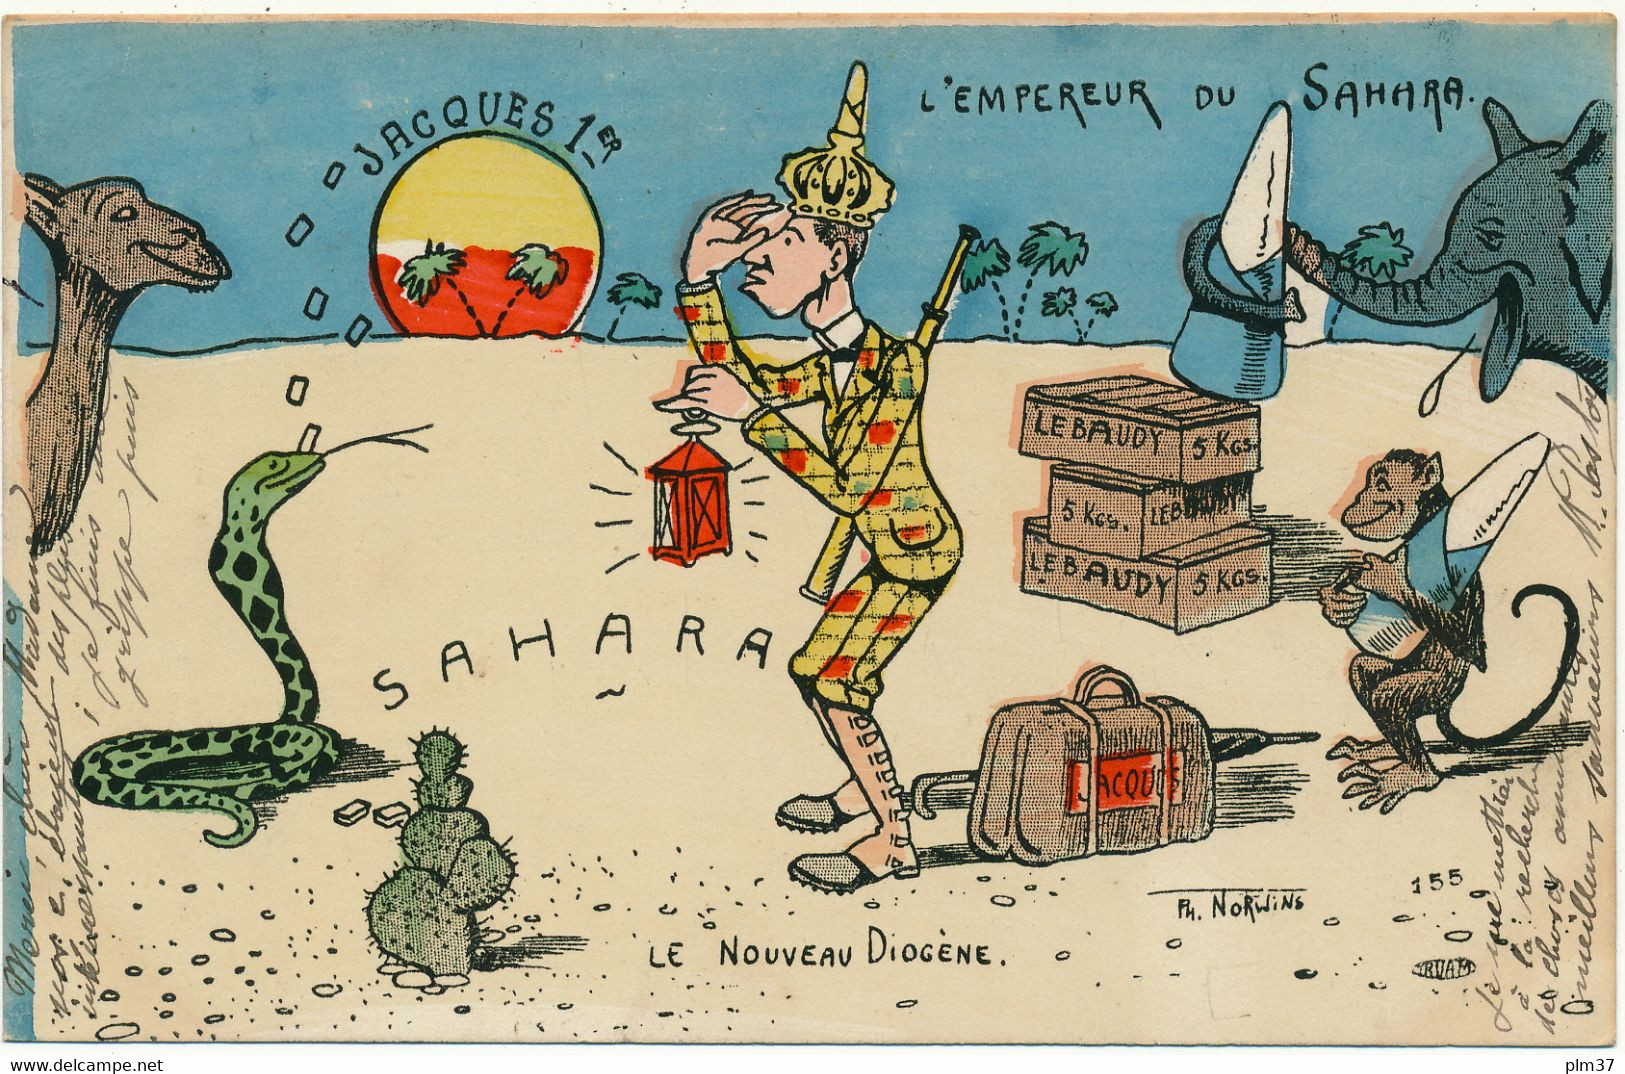 Politique Satirique - Jacques 1er, Empereur Du Sahara, Le Nouveau Diogène - Ph. Norwins - Satirical